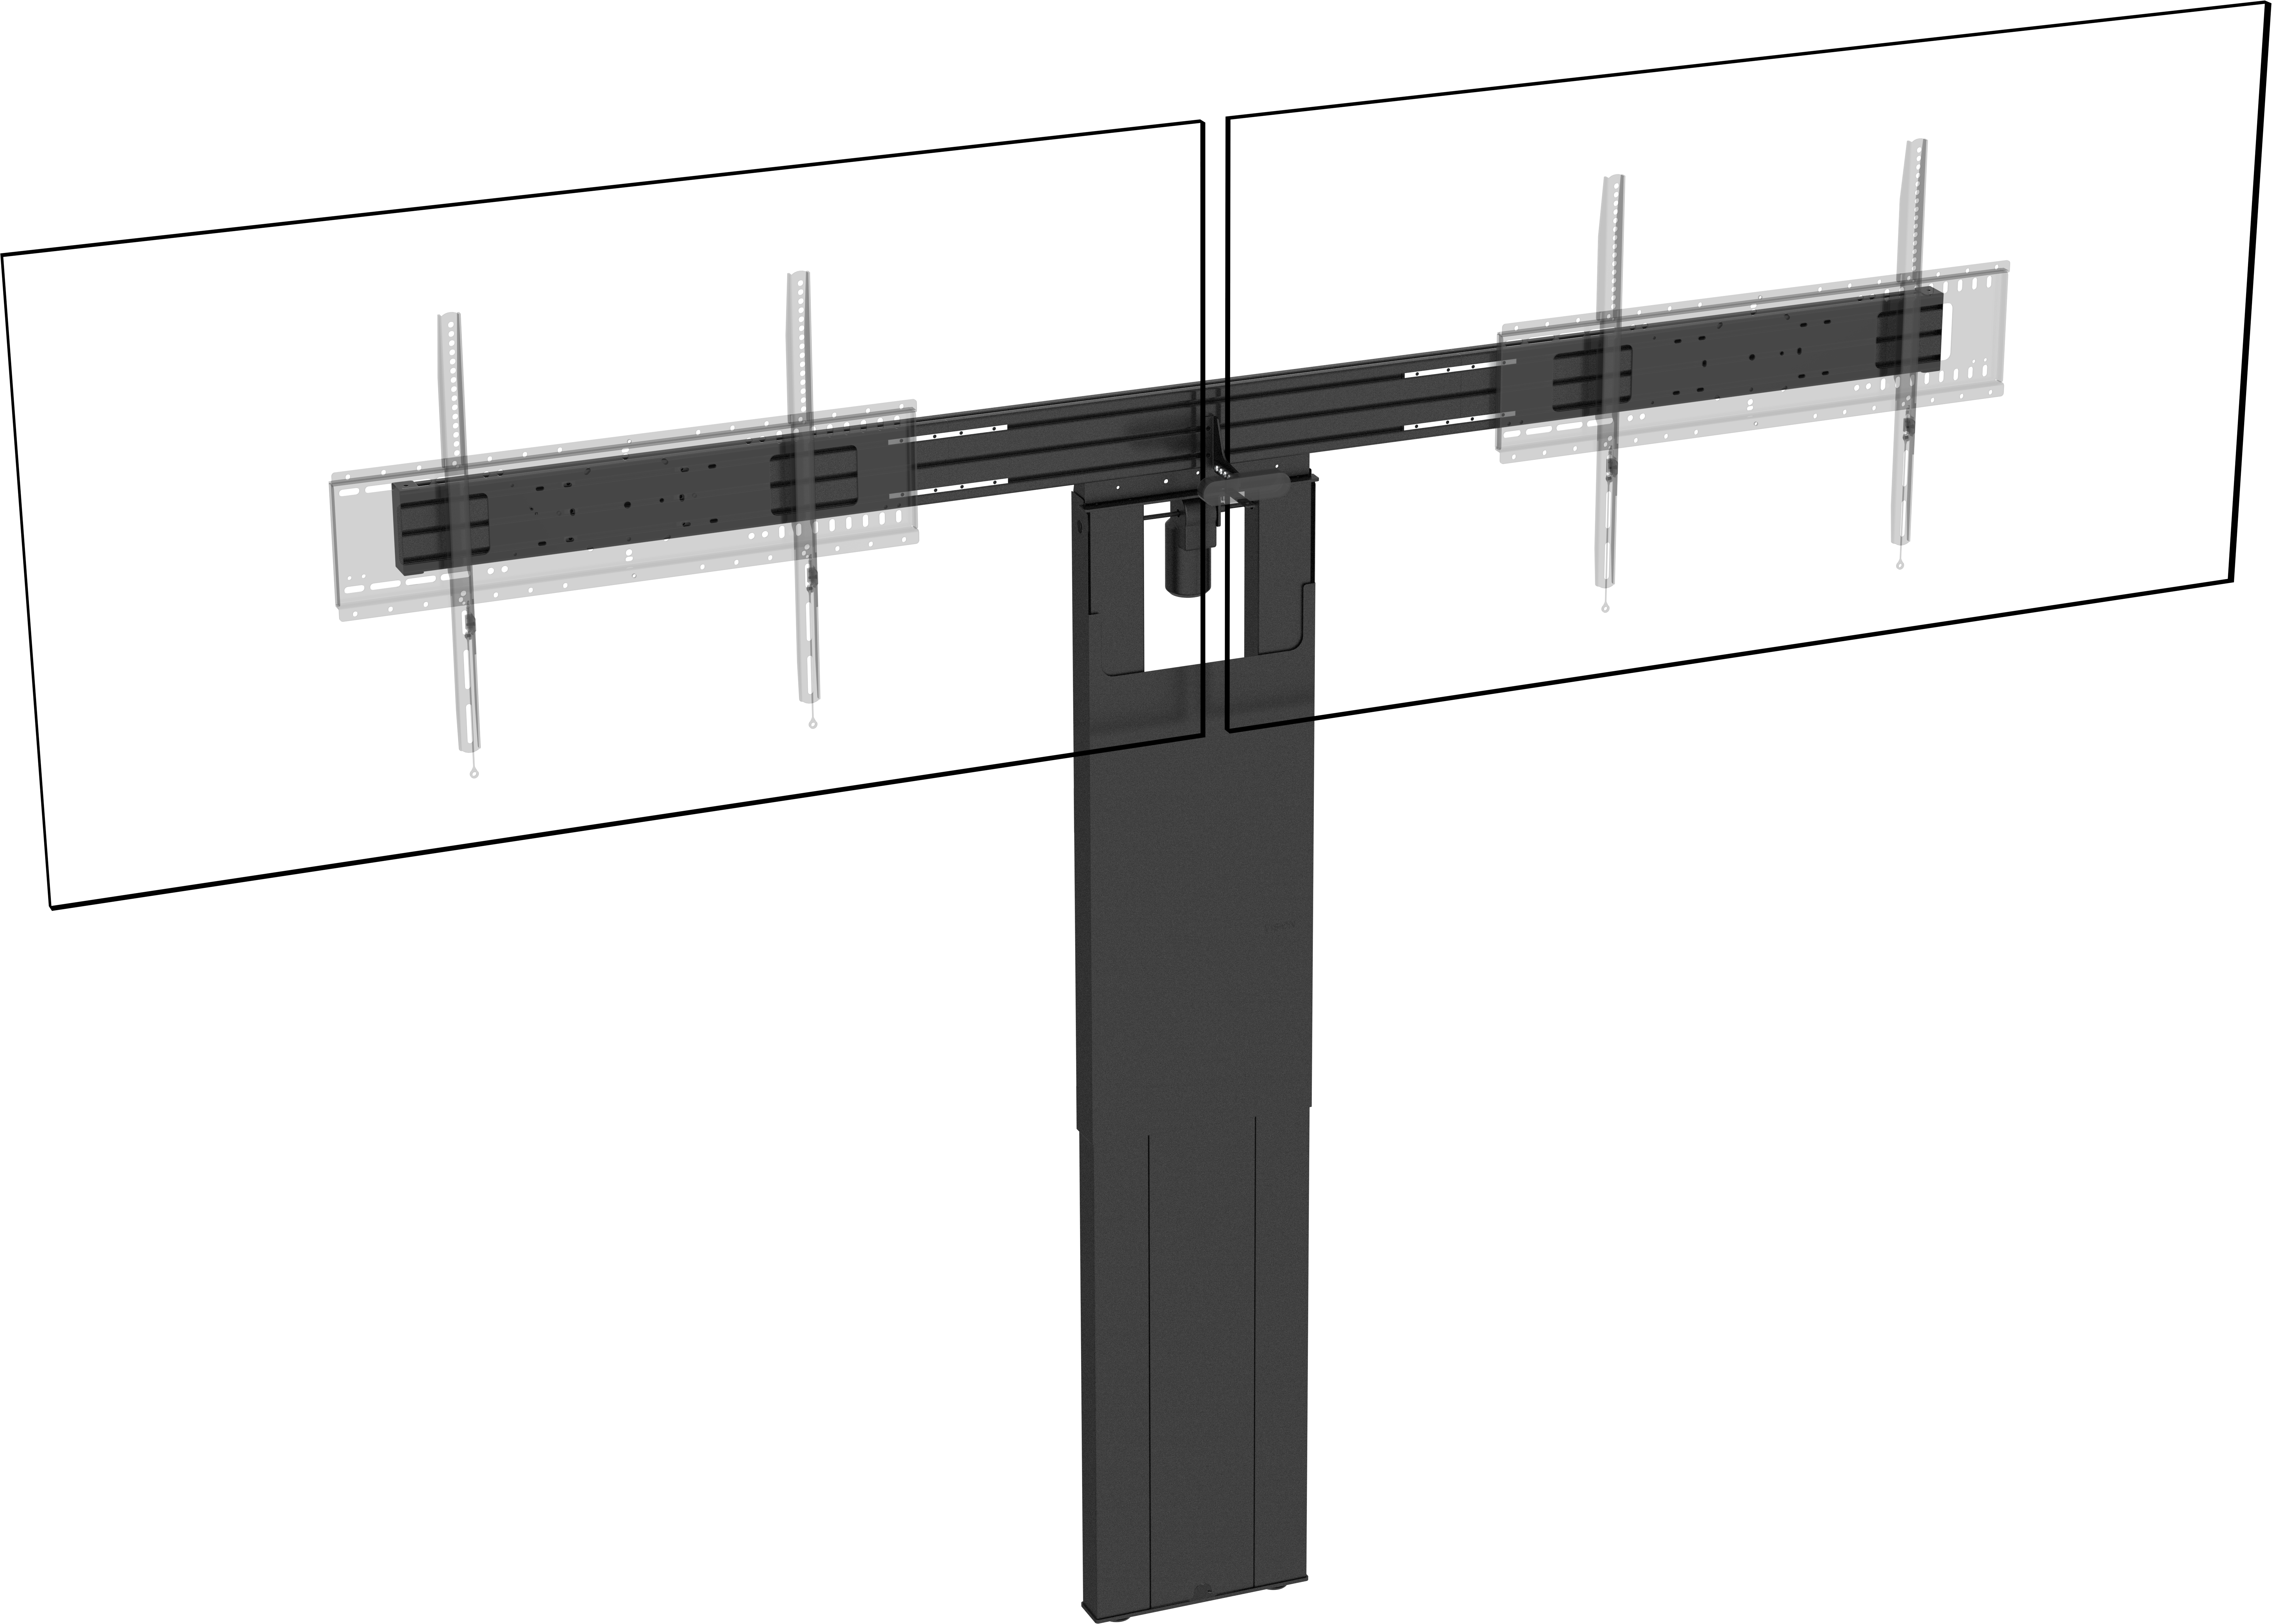 An image showing VFM-F51/DL Doppelter Bodenständer für Flachbildschirme